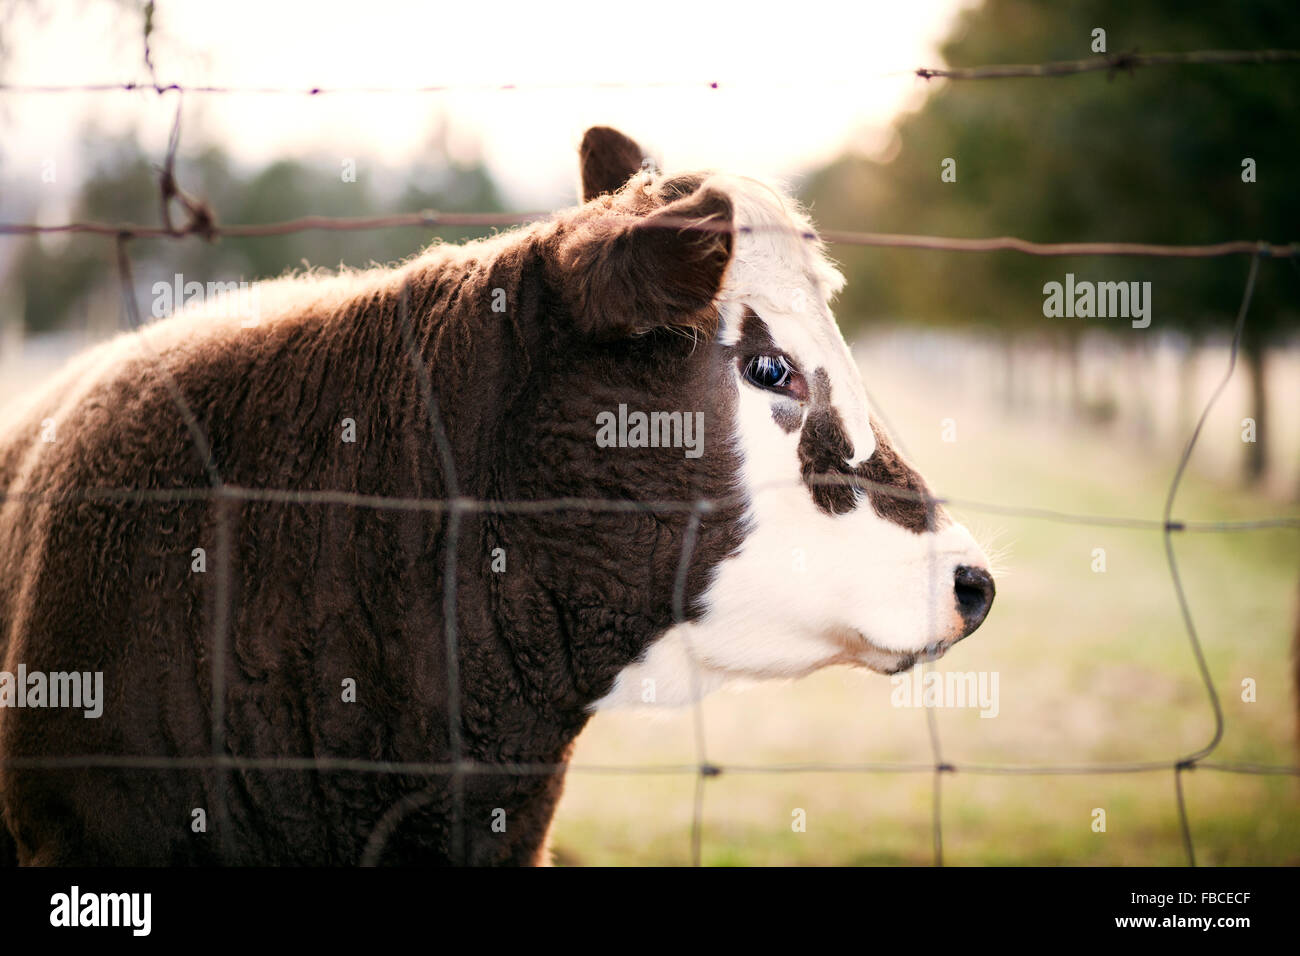 Perfil de marrón y blanco de vaca a través de una valla de alambre mirando hacia viewer Foto de stock